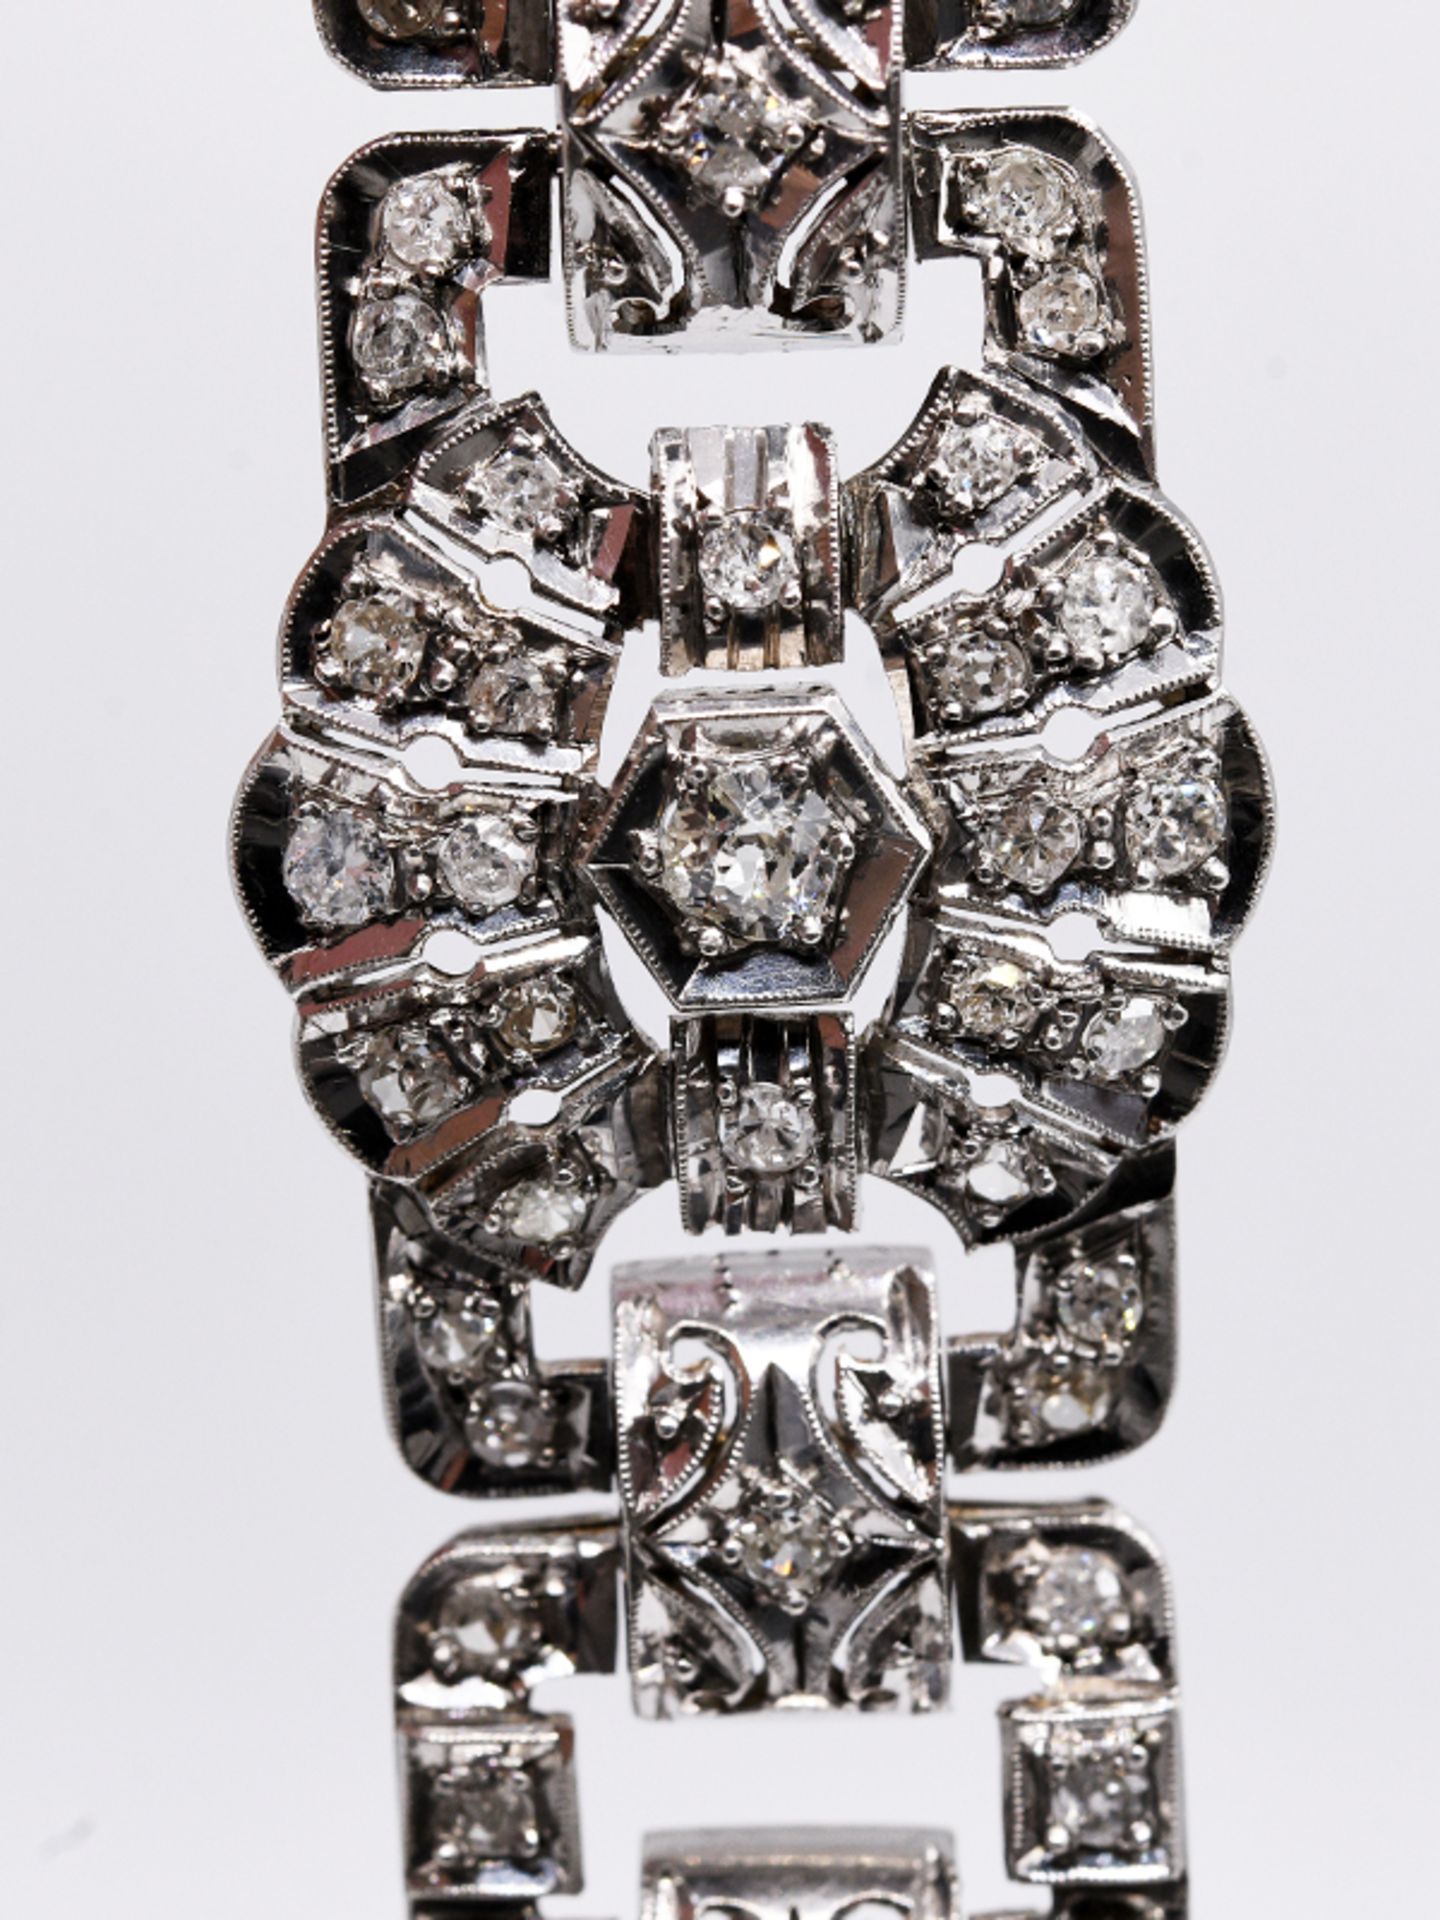 Silbernes Armband mit reichhaltigem Diamantenbesatz, zus. ca. 5 ct, im Art Deco Stil. Silber. - Bild 3 aus 5